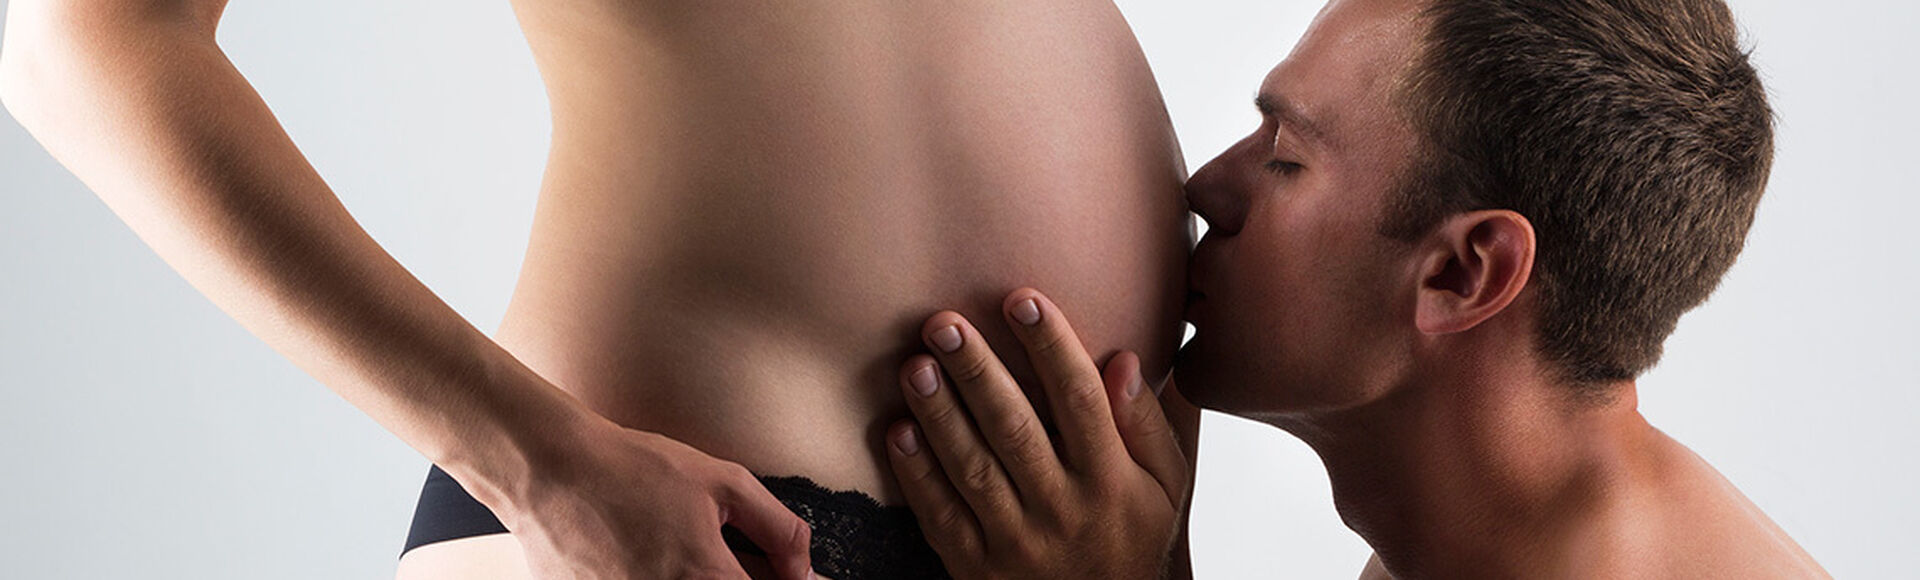 Cuantos meses son en la semana 30 de embarazo  | Más Abrazos by Huggies